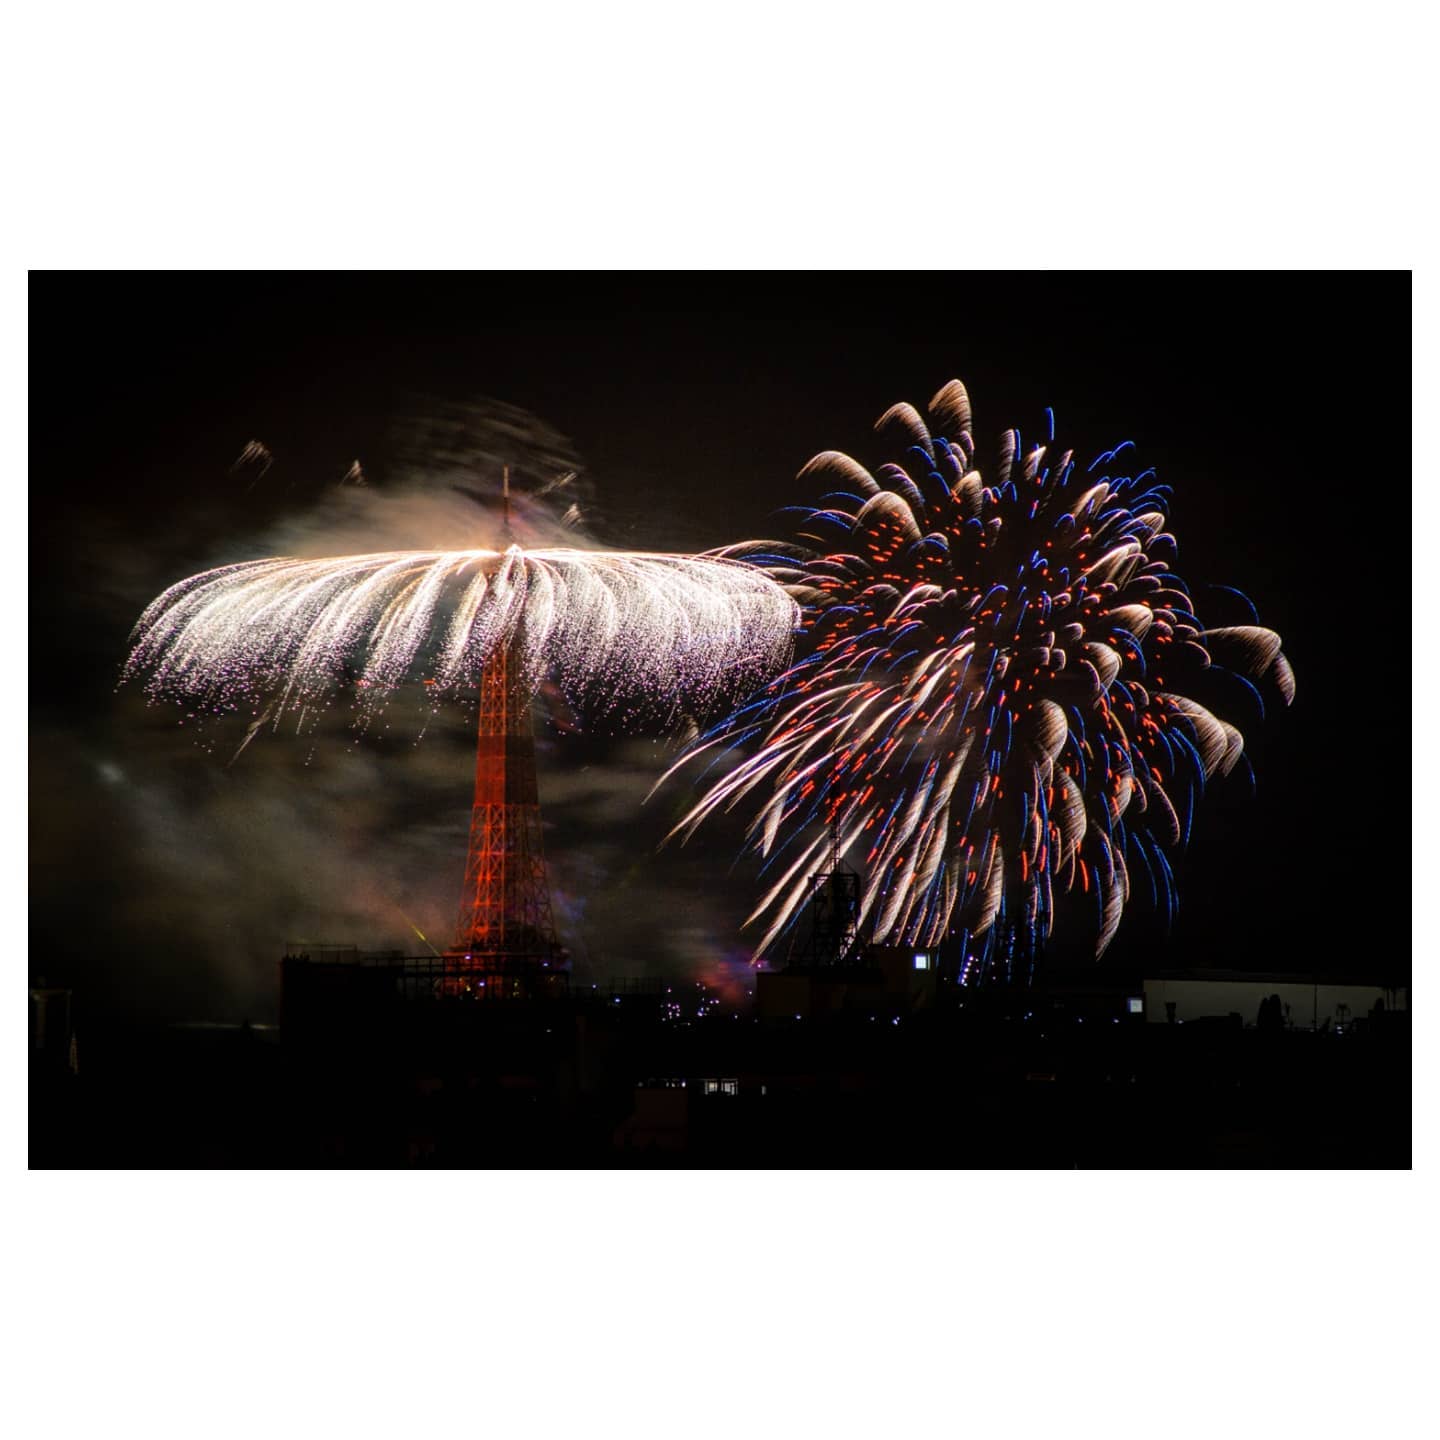 Le feu d'artifice du 14 Juillet à Paris! Toujours de ma fenêtre :)
.
.
.
#Bastilleday #fireworks #paris #parisjetaime #parisiloveyou #14juillet #feudartifice